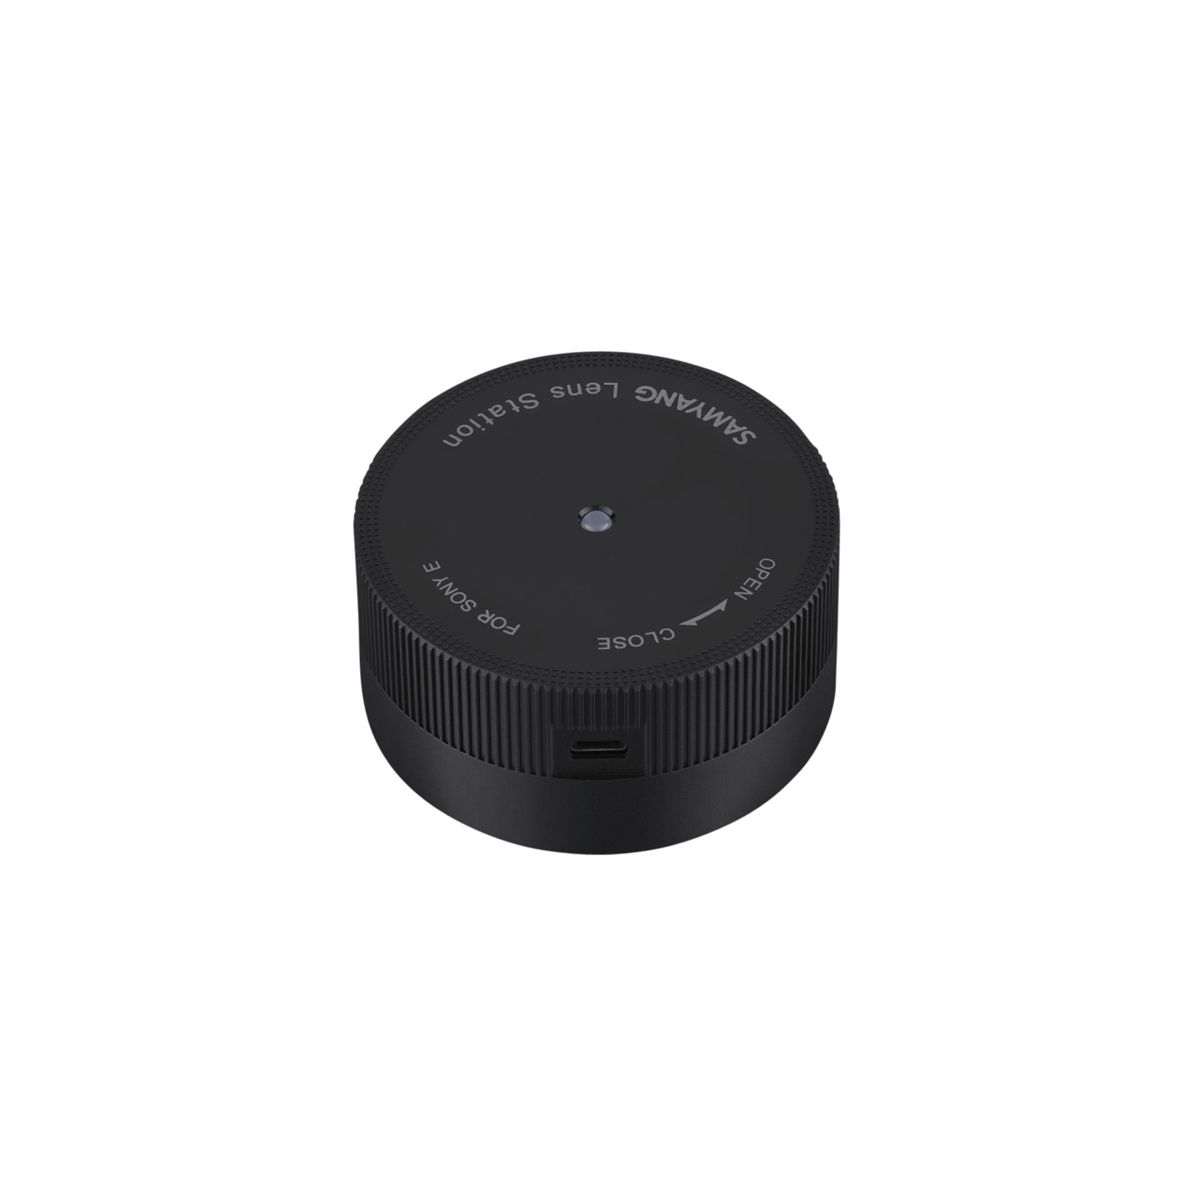 E-Mount, für Station für Lens Sony Sony schwarz SAMYANG millimetres Manager / (Lens weiß) 0 E AF